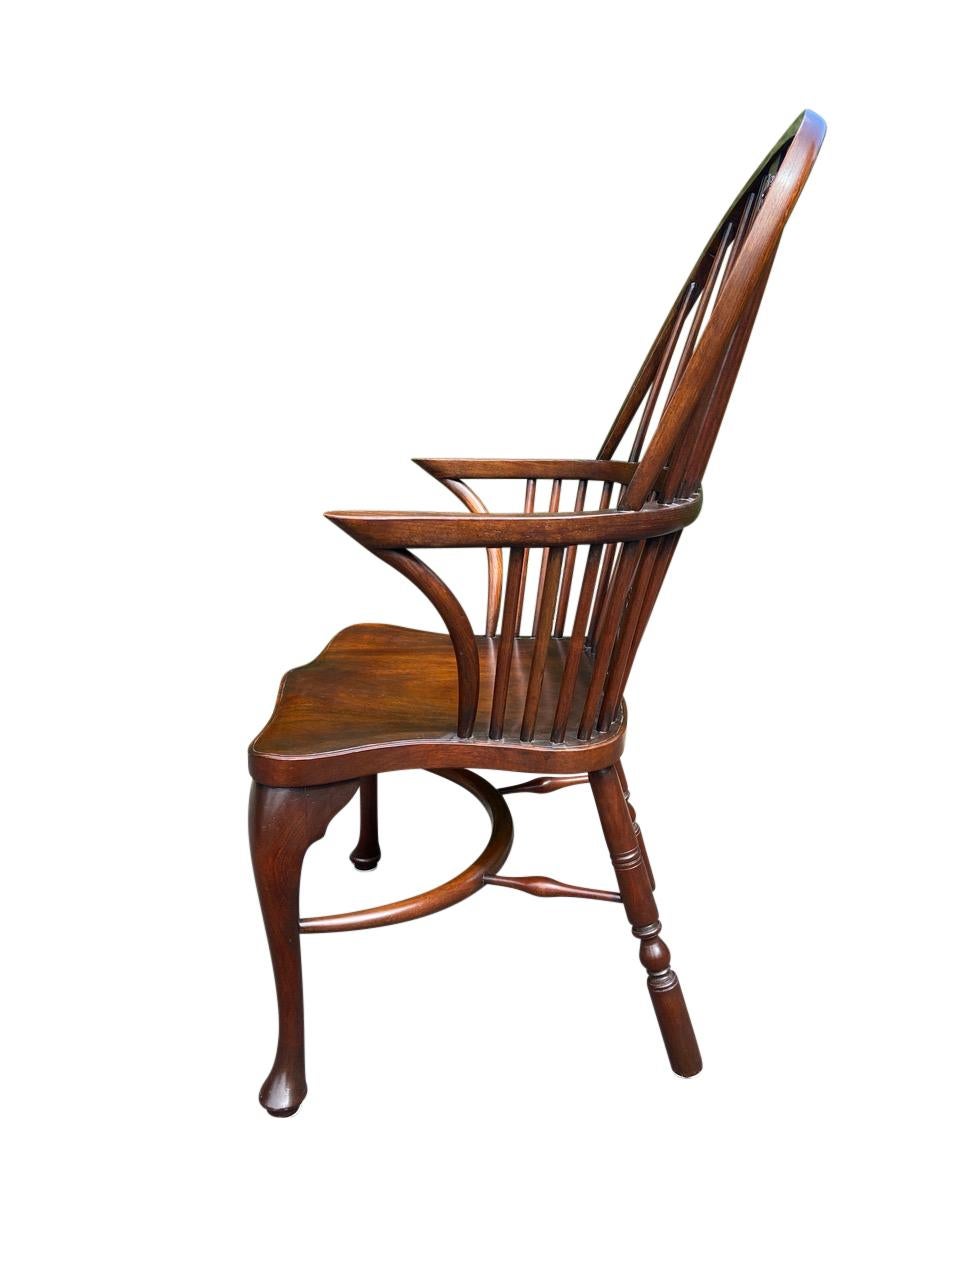 Ein geschnitzter Mahagoni-Sessel im Hepplewhite-Stil im Stil von George III, Royal Windsor. Dieses ungewöhnliche Modell eines Windsor-Stuhls stammt aus dem frühen 20. Jahrhundert, basiert aber auf einem zeitgenössischen Modell. Die Leiste ist mit